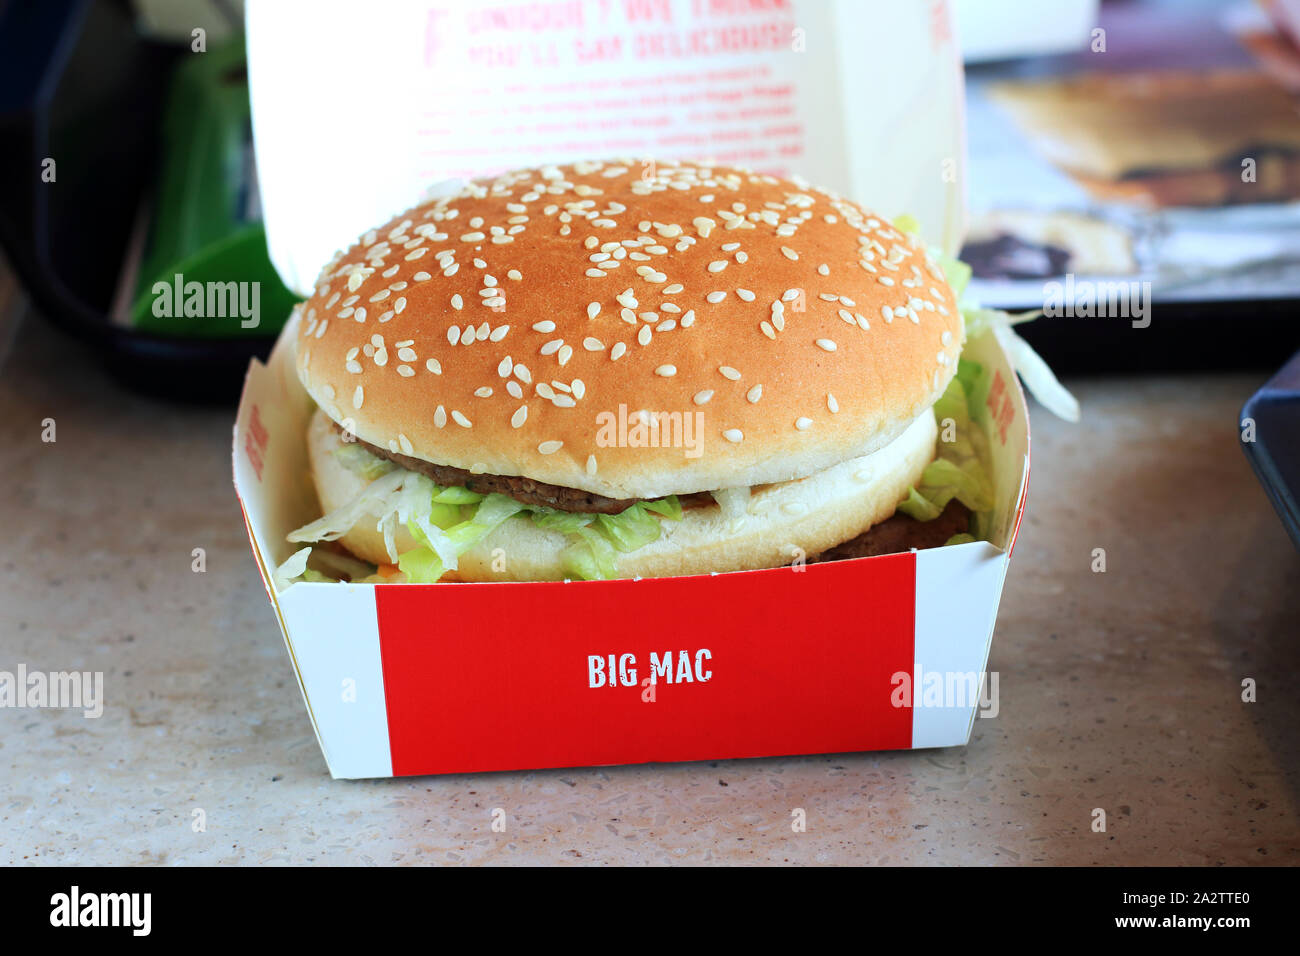 Close up image of McDonald's Big Mac burger Stock Photo